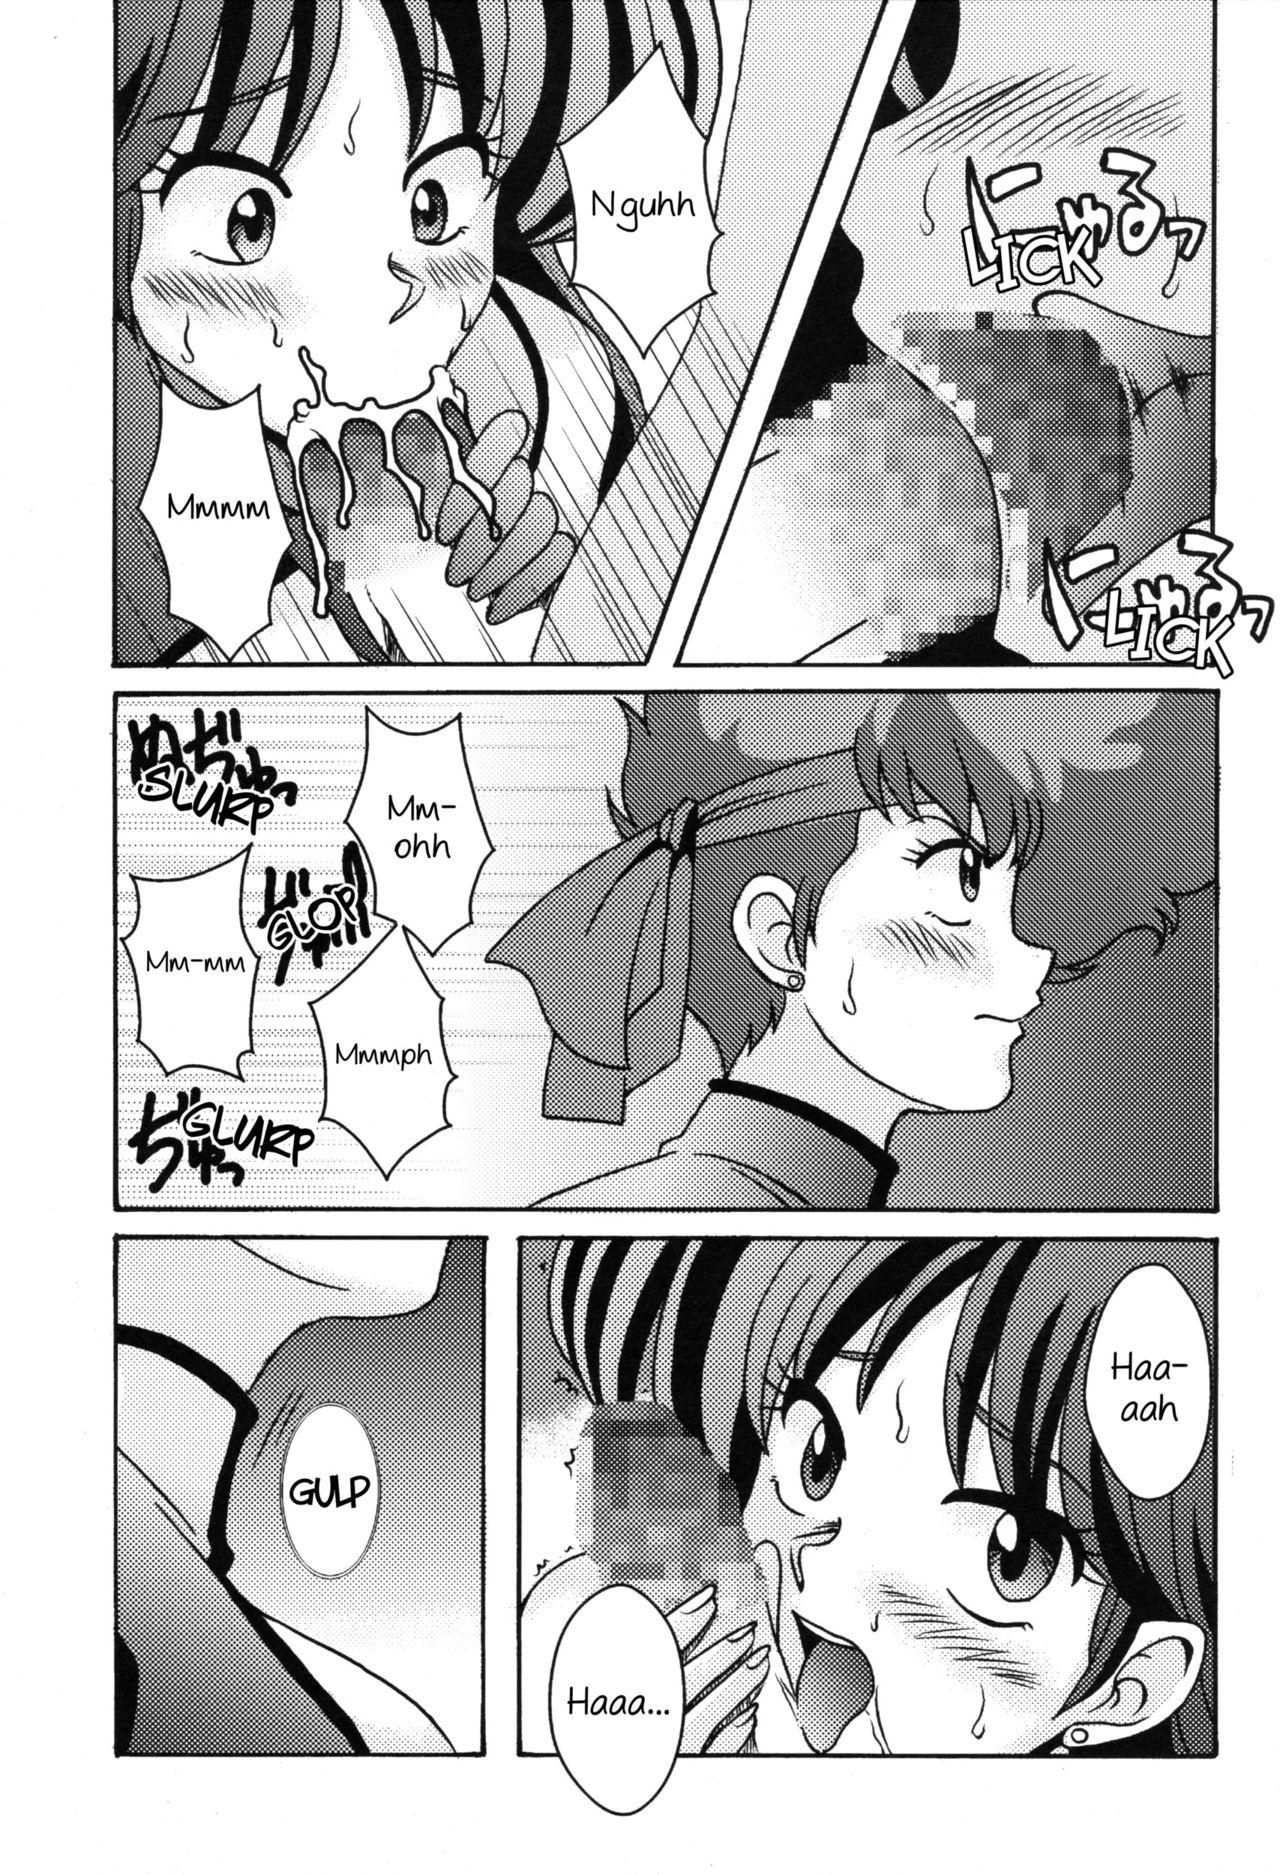 Slutty Kei to Yuri - Dirty pair Gaypawn - Page 8